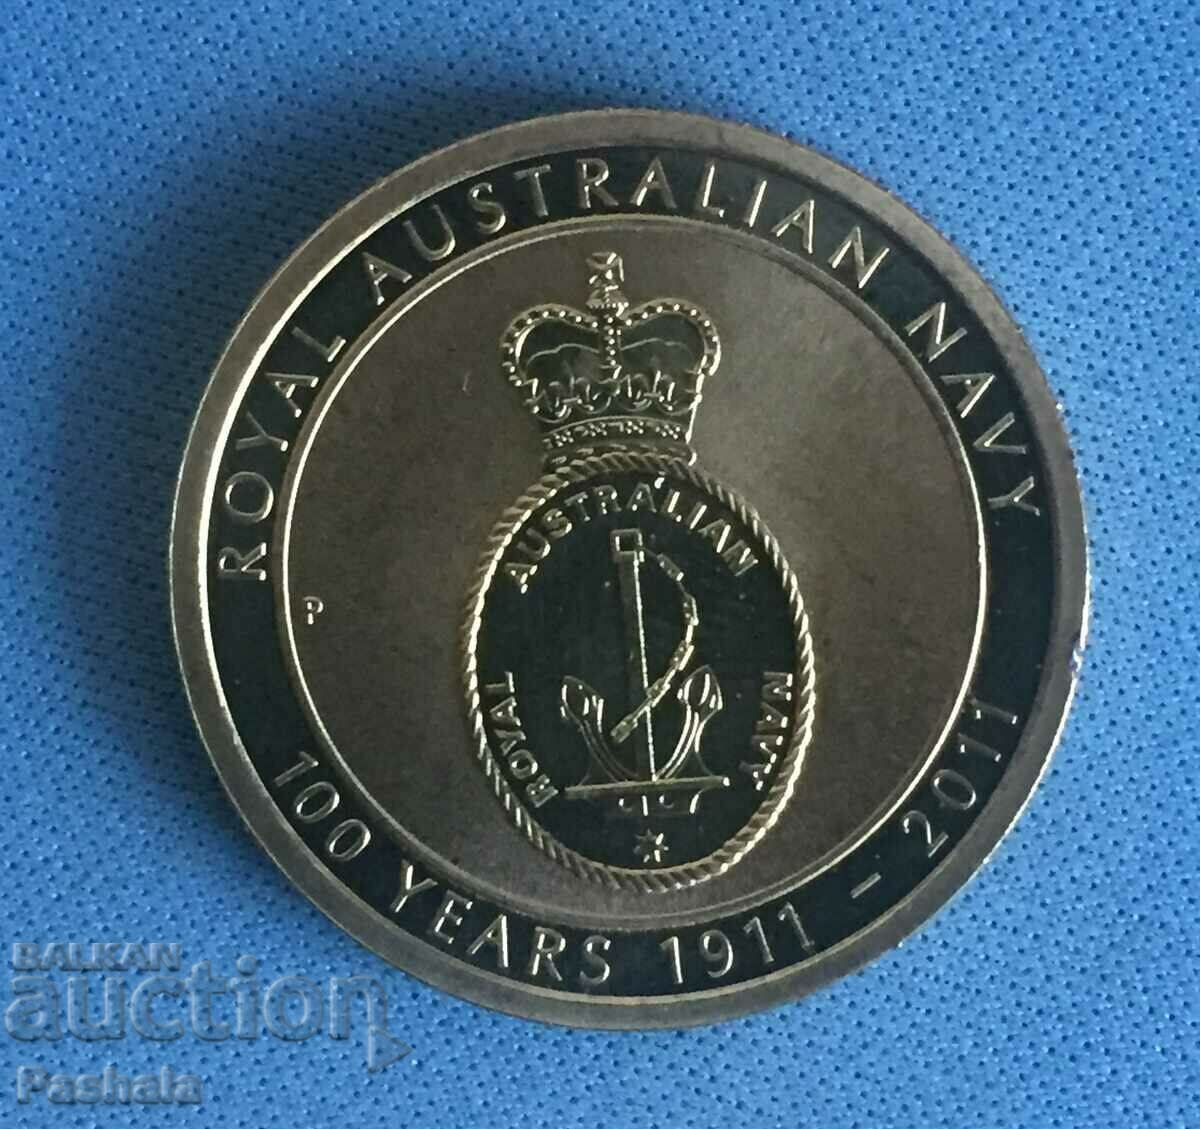 Αυστραλία $1 2011